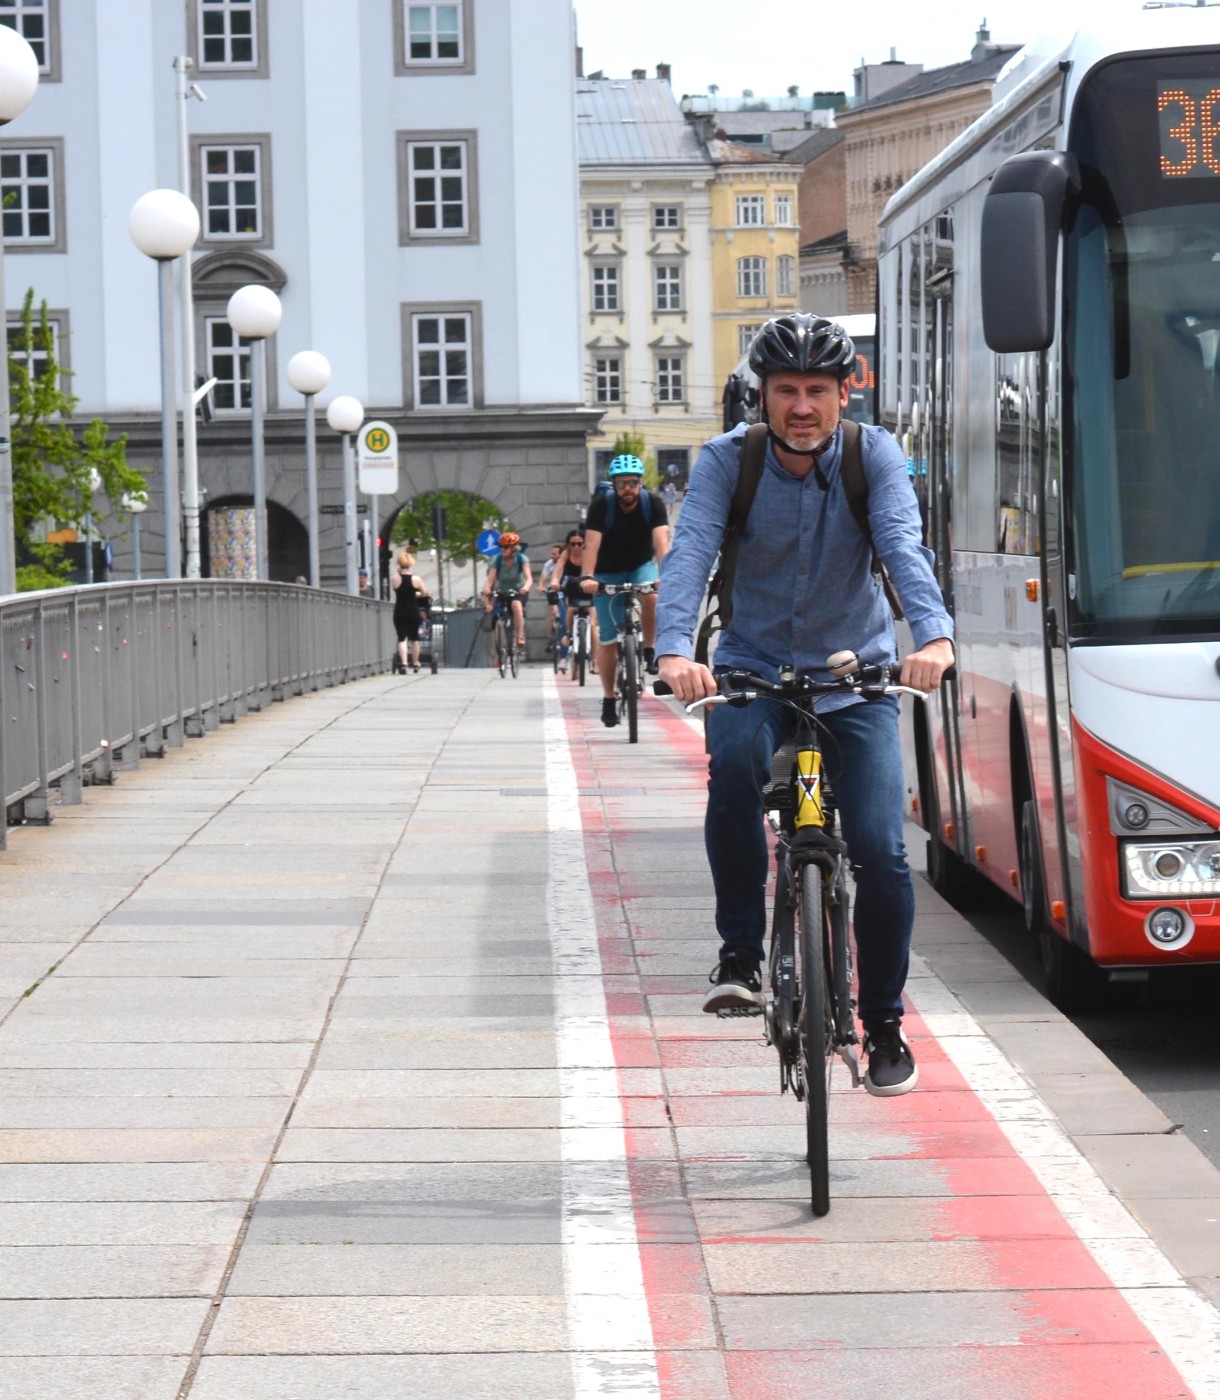 Mobilitätswoche: Ausbau von Rad- und Fußwegen kommt weiter nur stockend in Fahrt